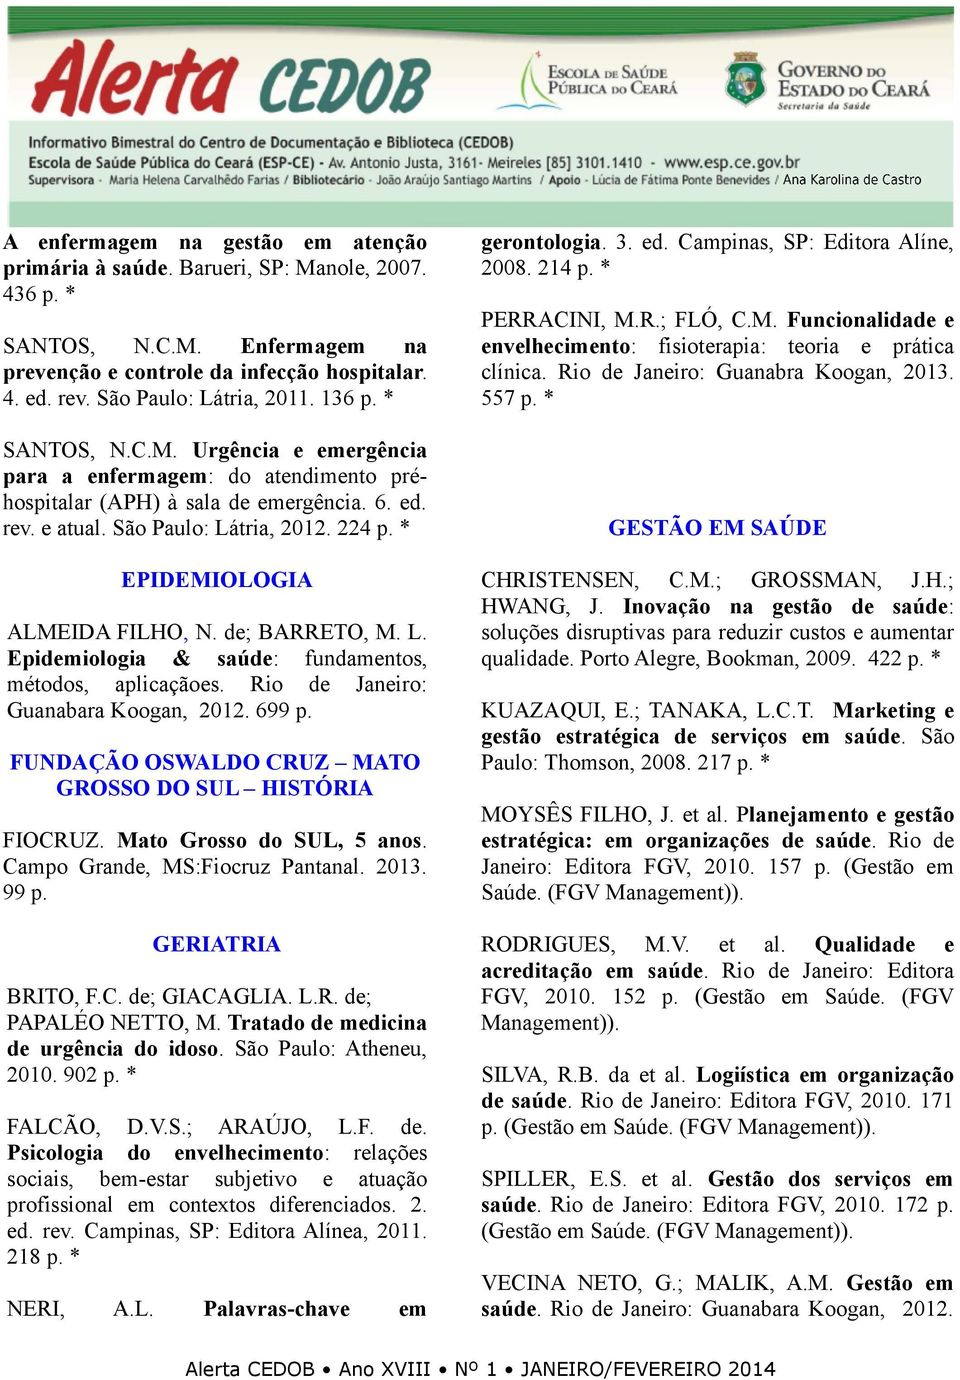 * EPIDEMIOLOGIA ALMEIDA FILHO, N. de; BARRETO, M. L. Epidemiologia & saúde: fundamentos, métodos, aplicaçãoes. Rio de Janeiro: Guanabara Koogan, 2012. 699 p.